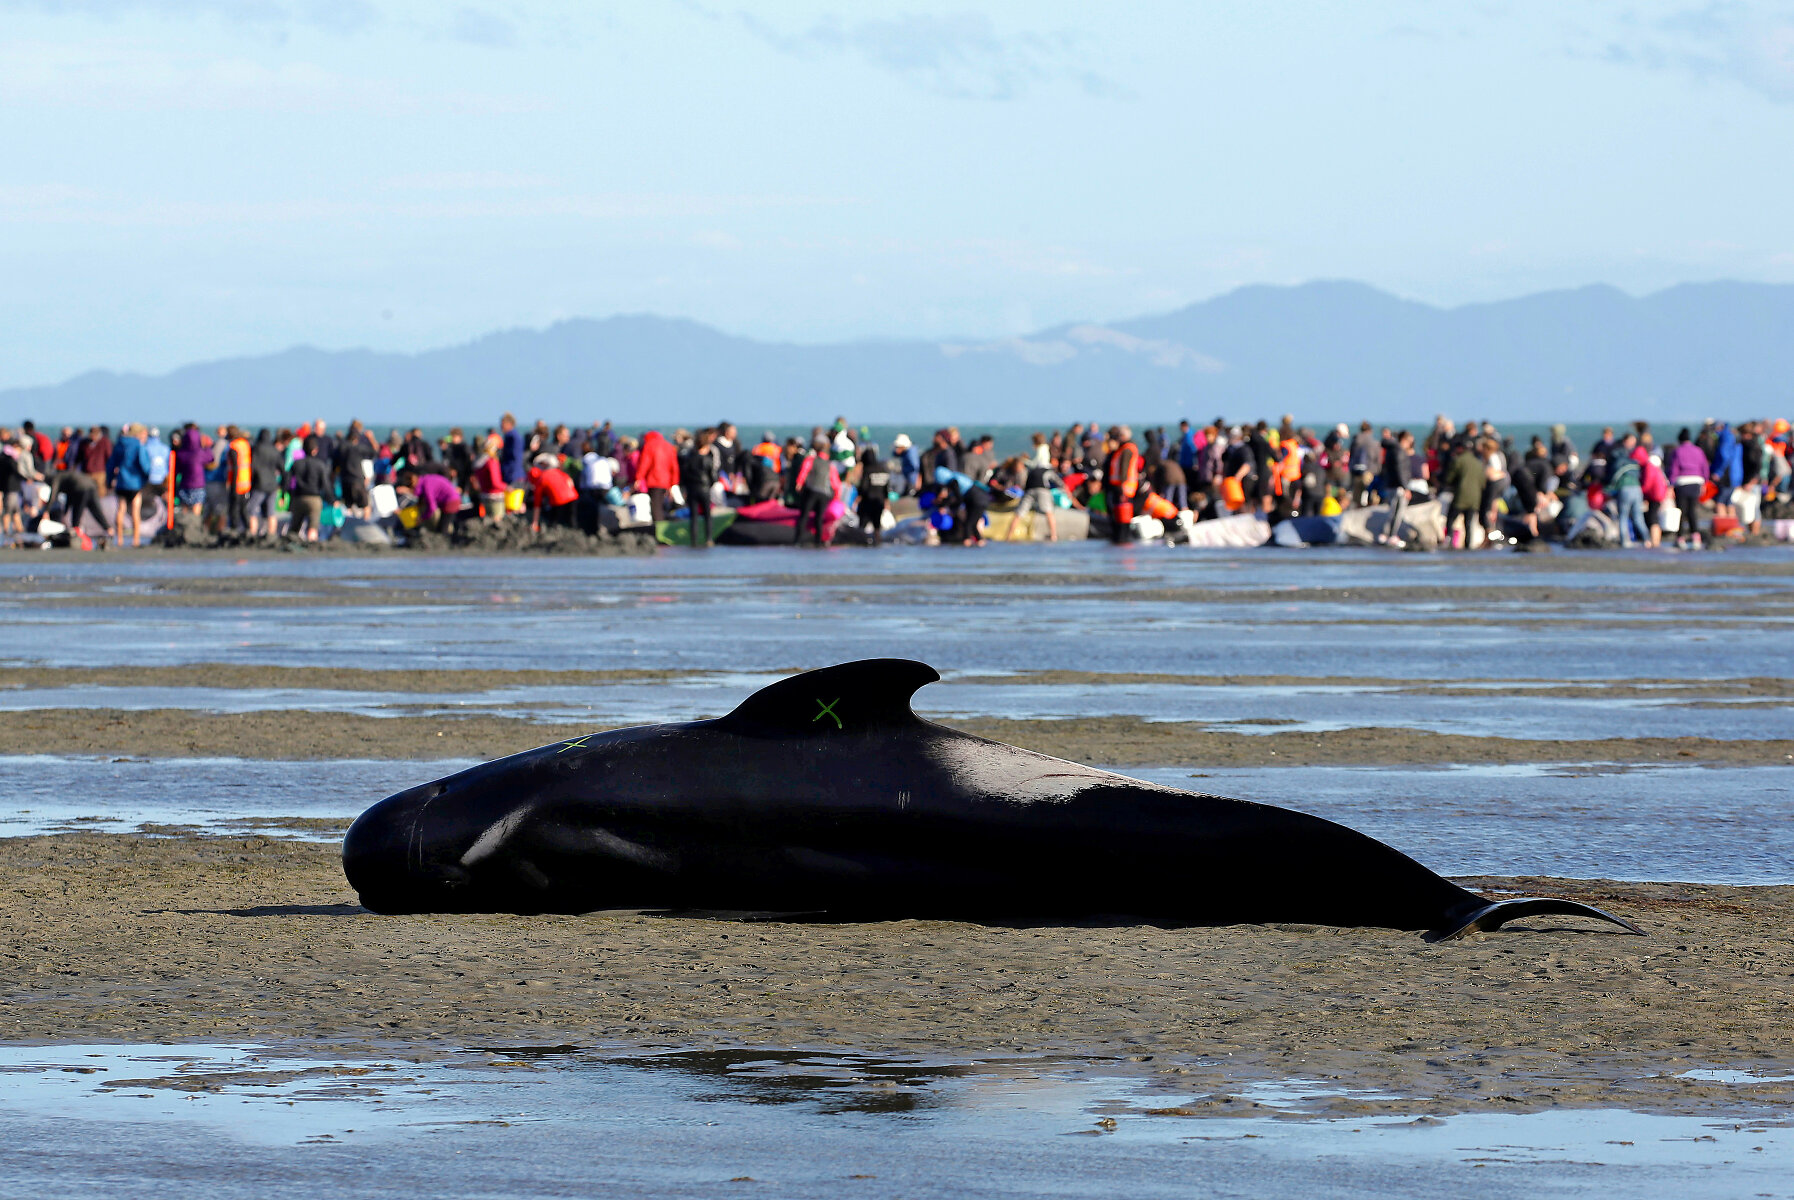 <p>Ученые пока не могут точно ответить, что становится причиной массового самоубийства китообразных в разных уголках Земли. Как правило, если один дельфин выбрасывается на берег, то другие из стаи пытаются ему помочь и в результате тоже попадают на мель.</p>

<p>&nbsp;</p>